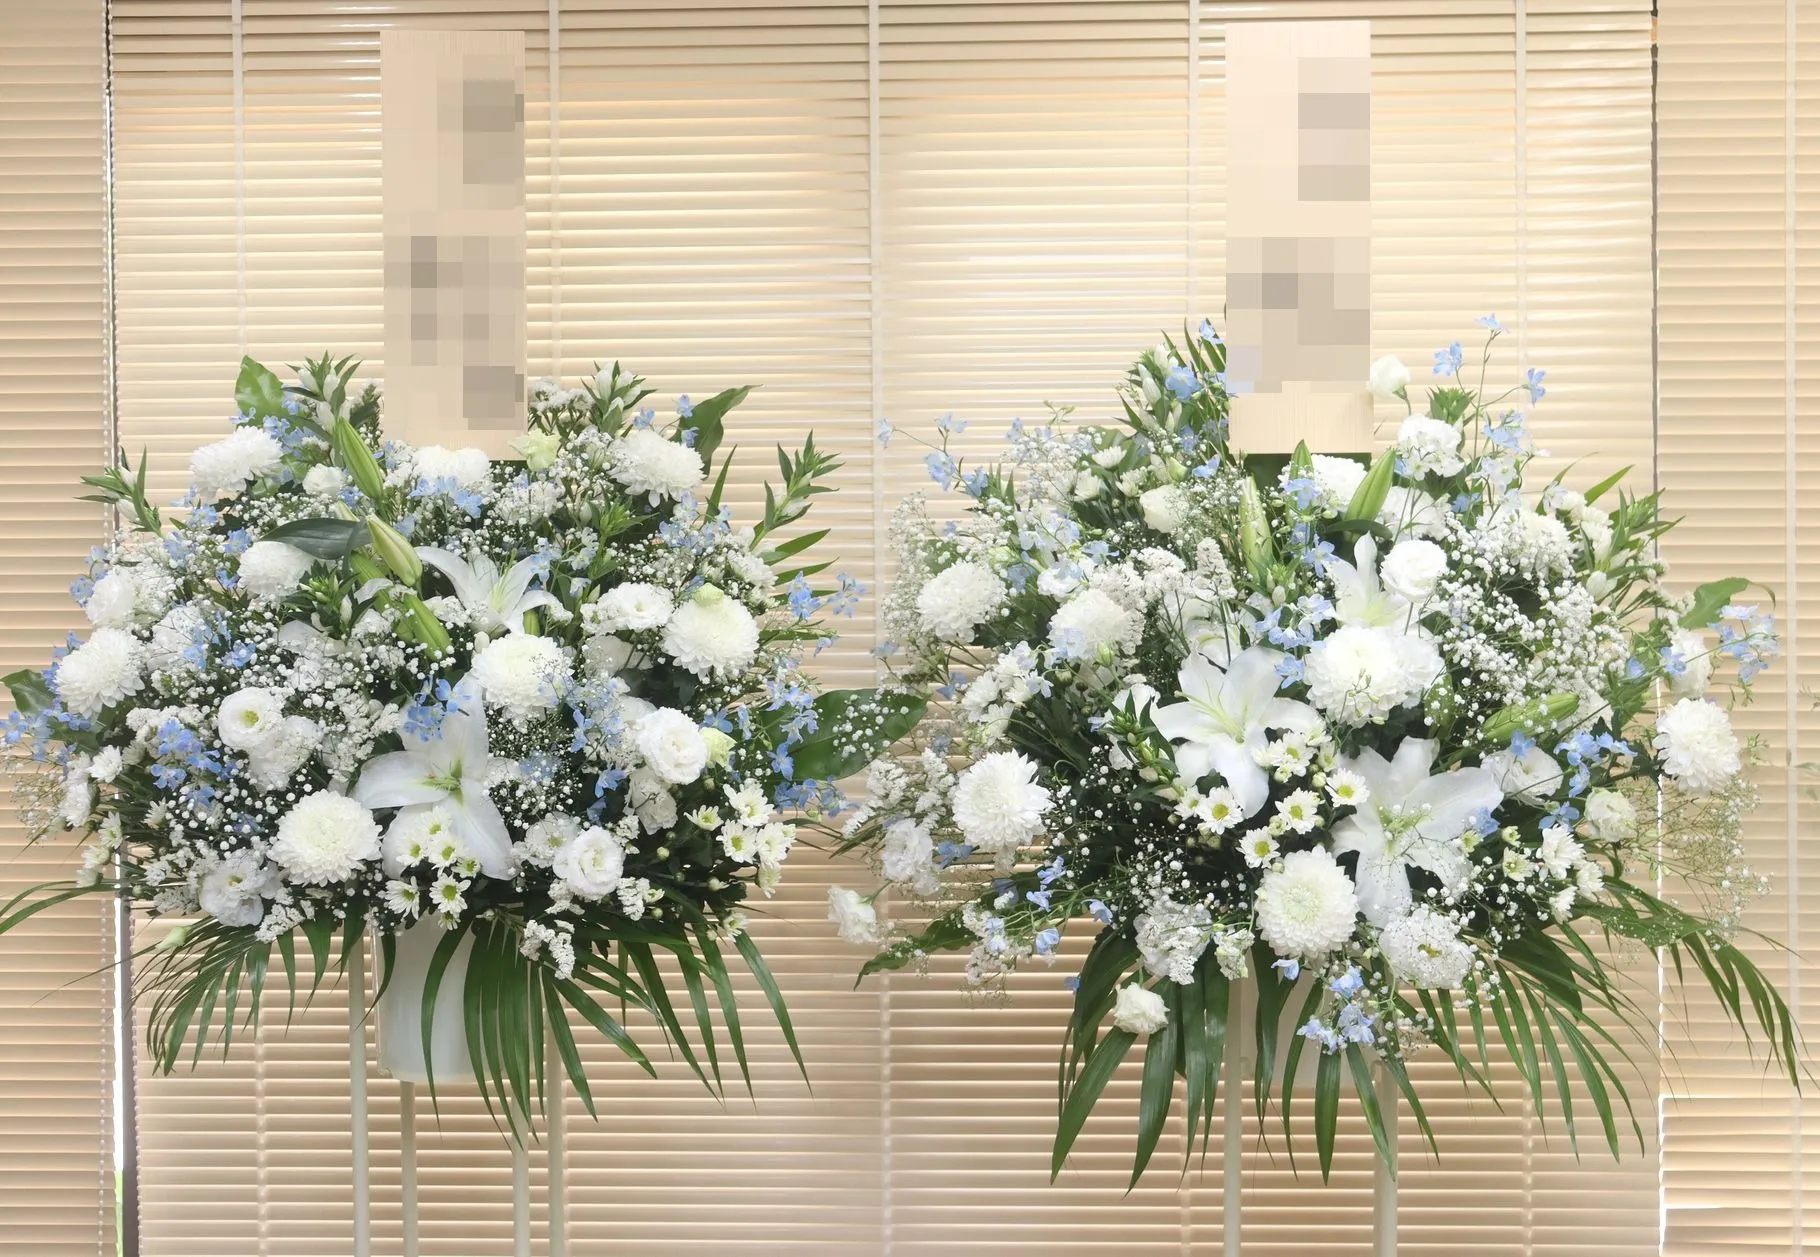 ふじみ野、所沢、川越の斎場葬儀での供花も対応しています